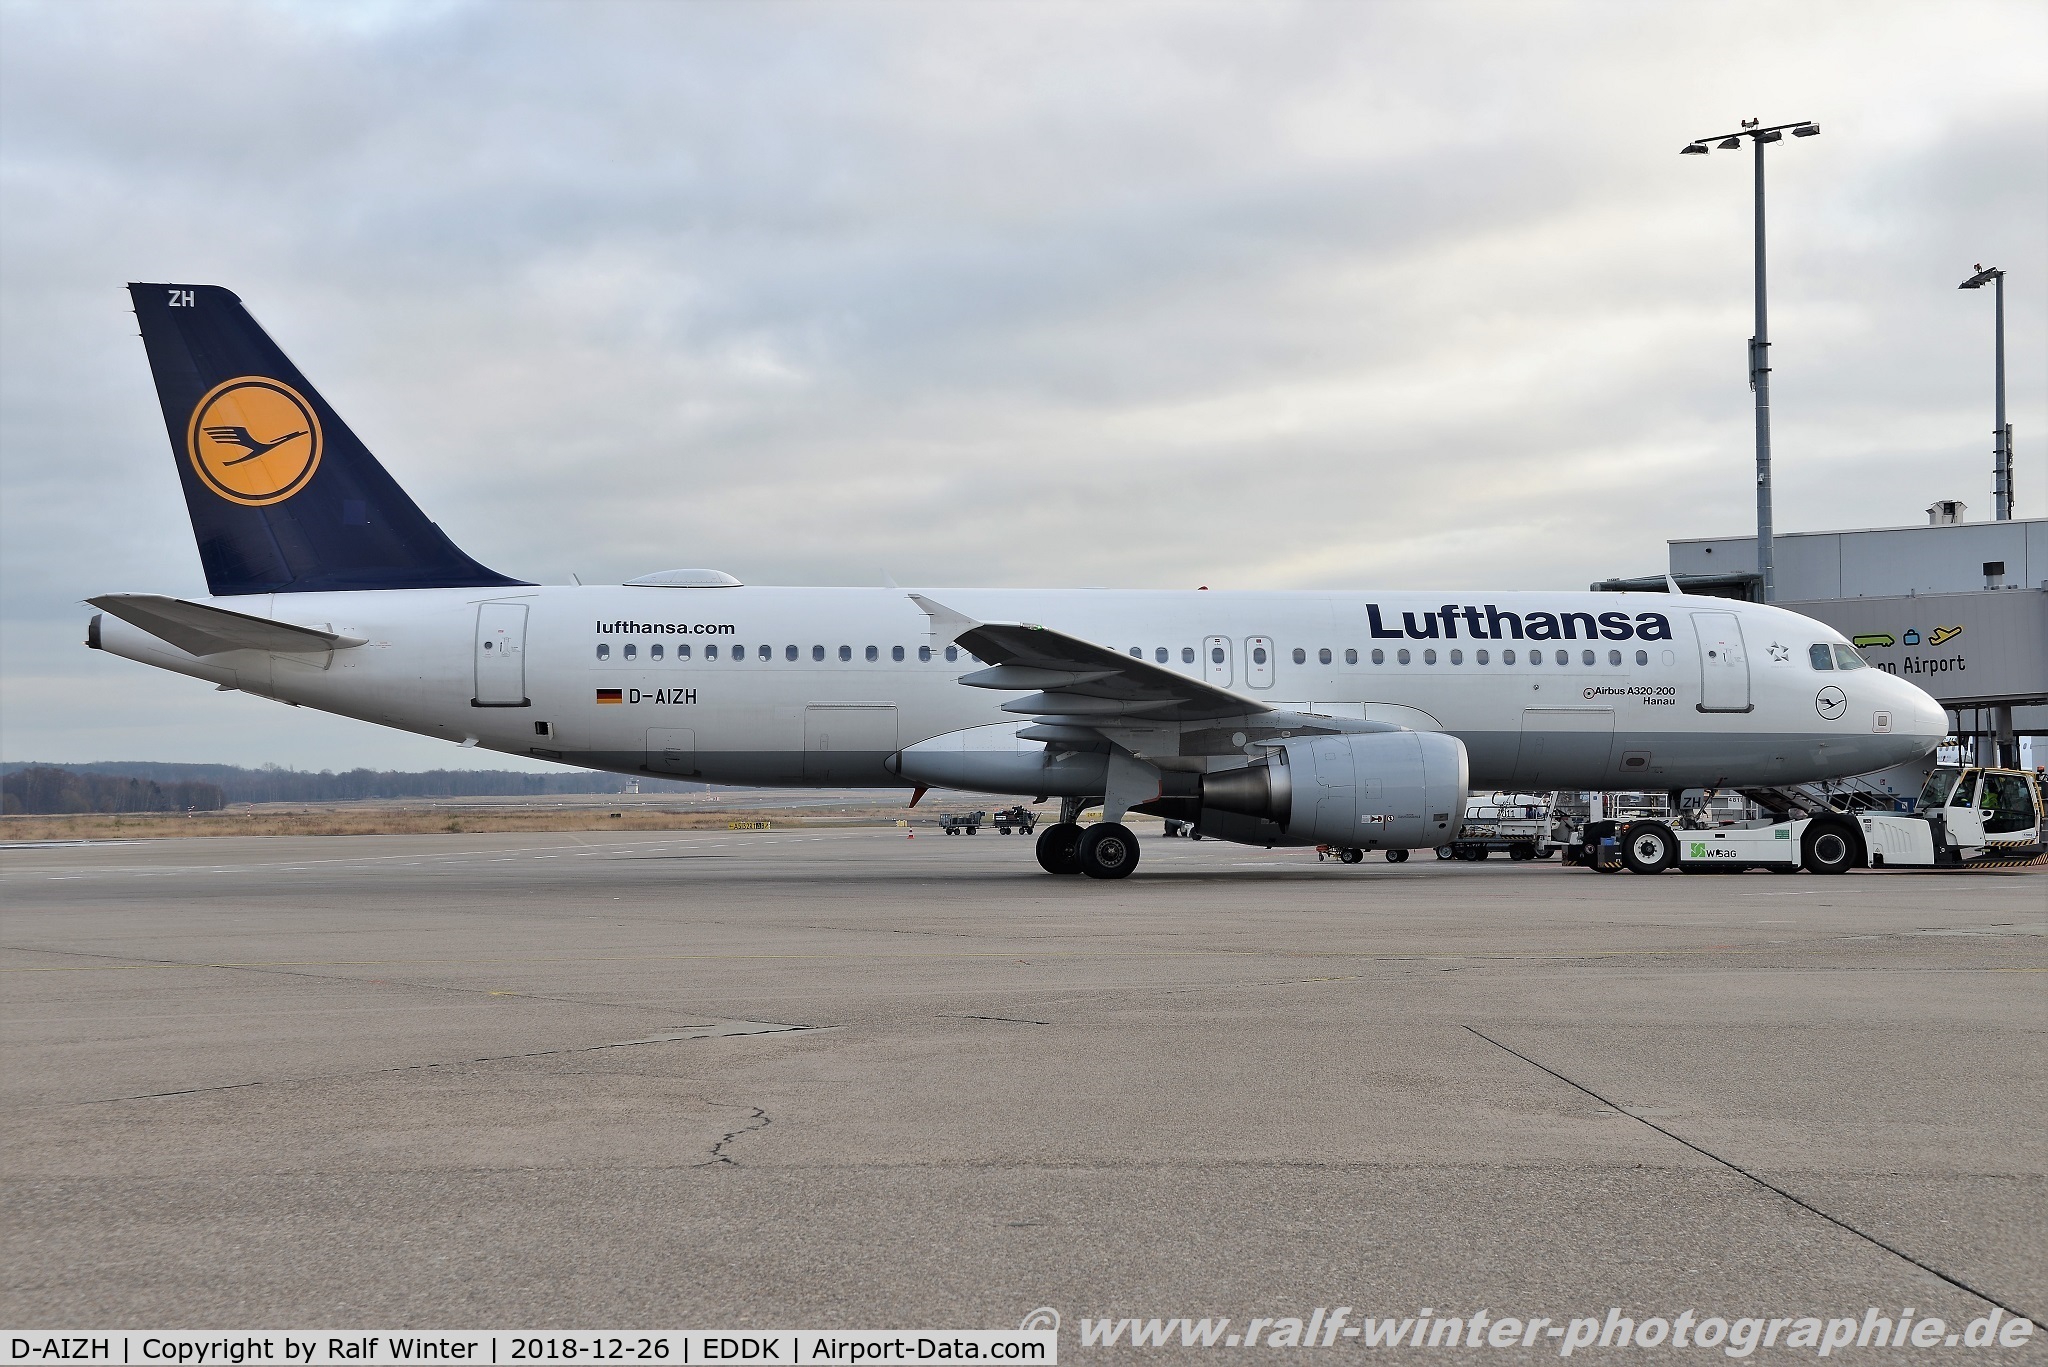 D-AIZH, 2010 Airbus A320-214 C/N 4363, Airbus A320-214 - LH DLH Lufthansa 'Hanau' - 4363 - D-AIZH - 26.12.2018 - CGN